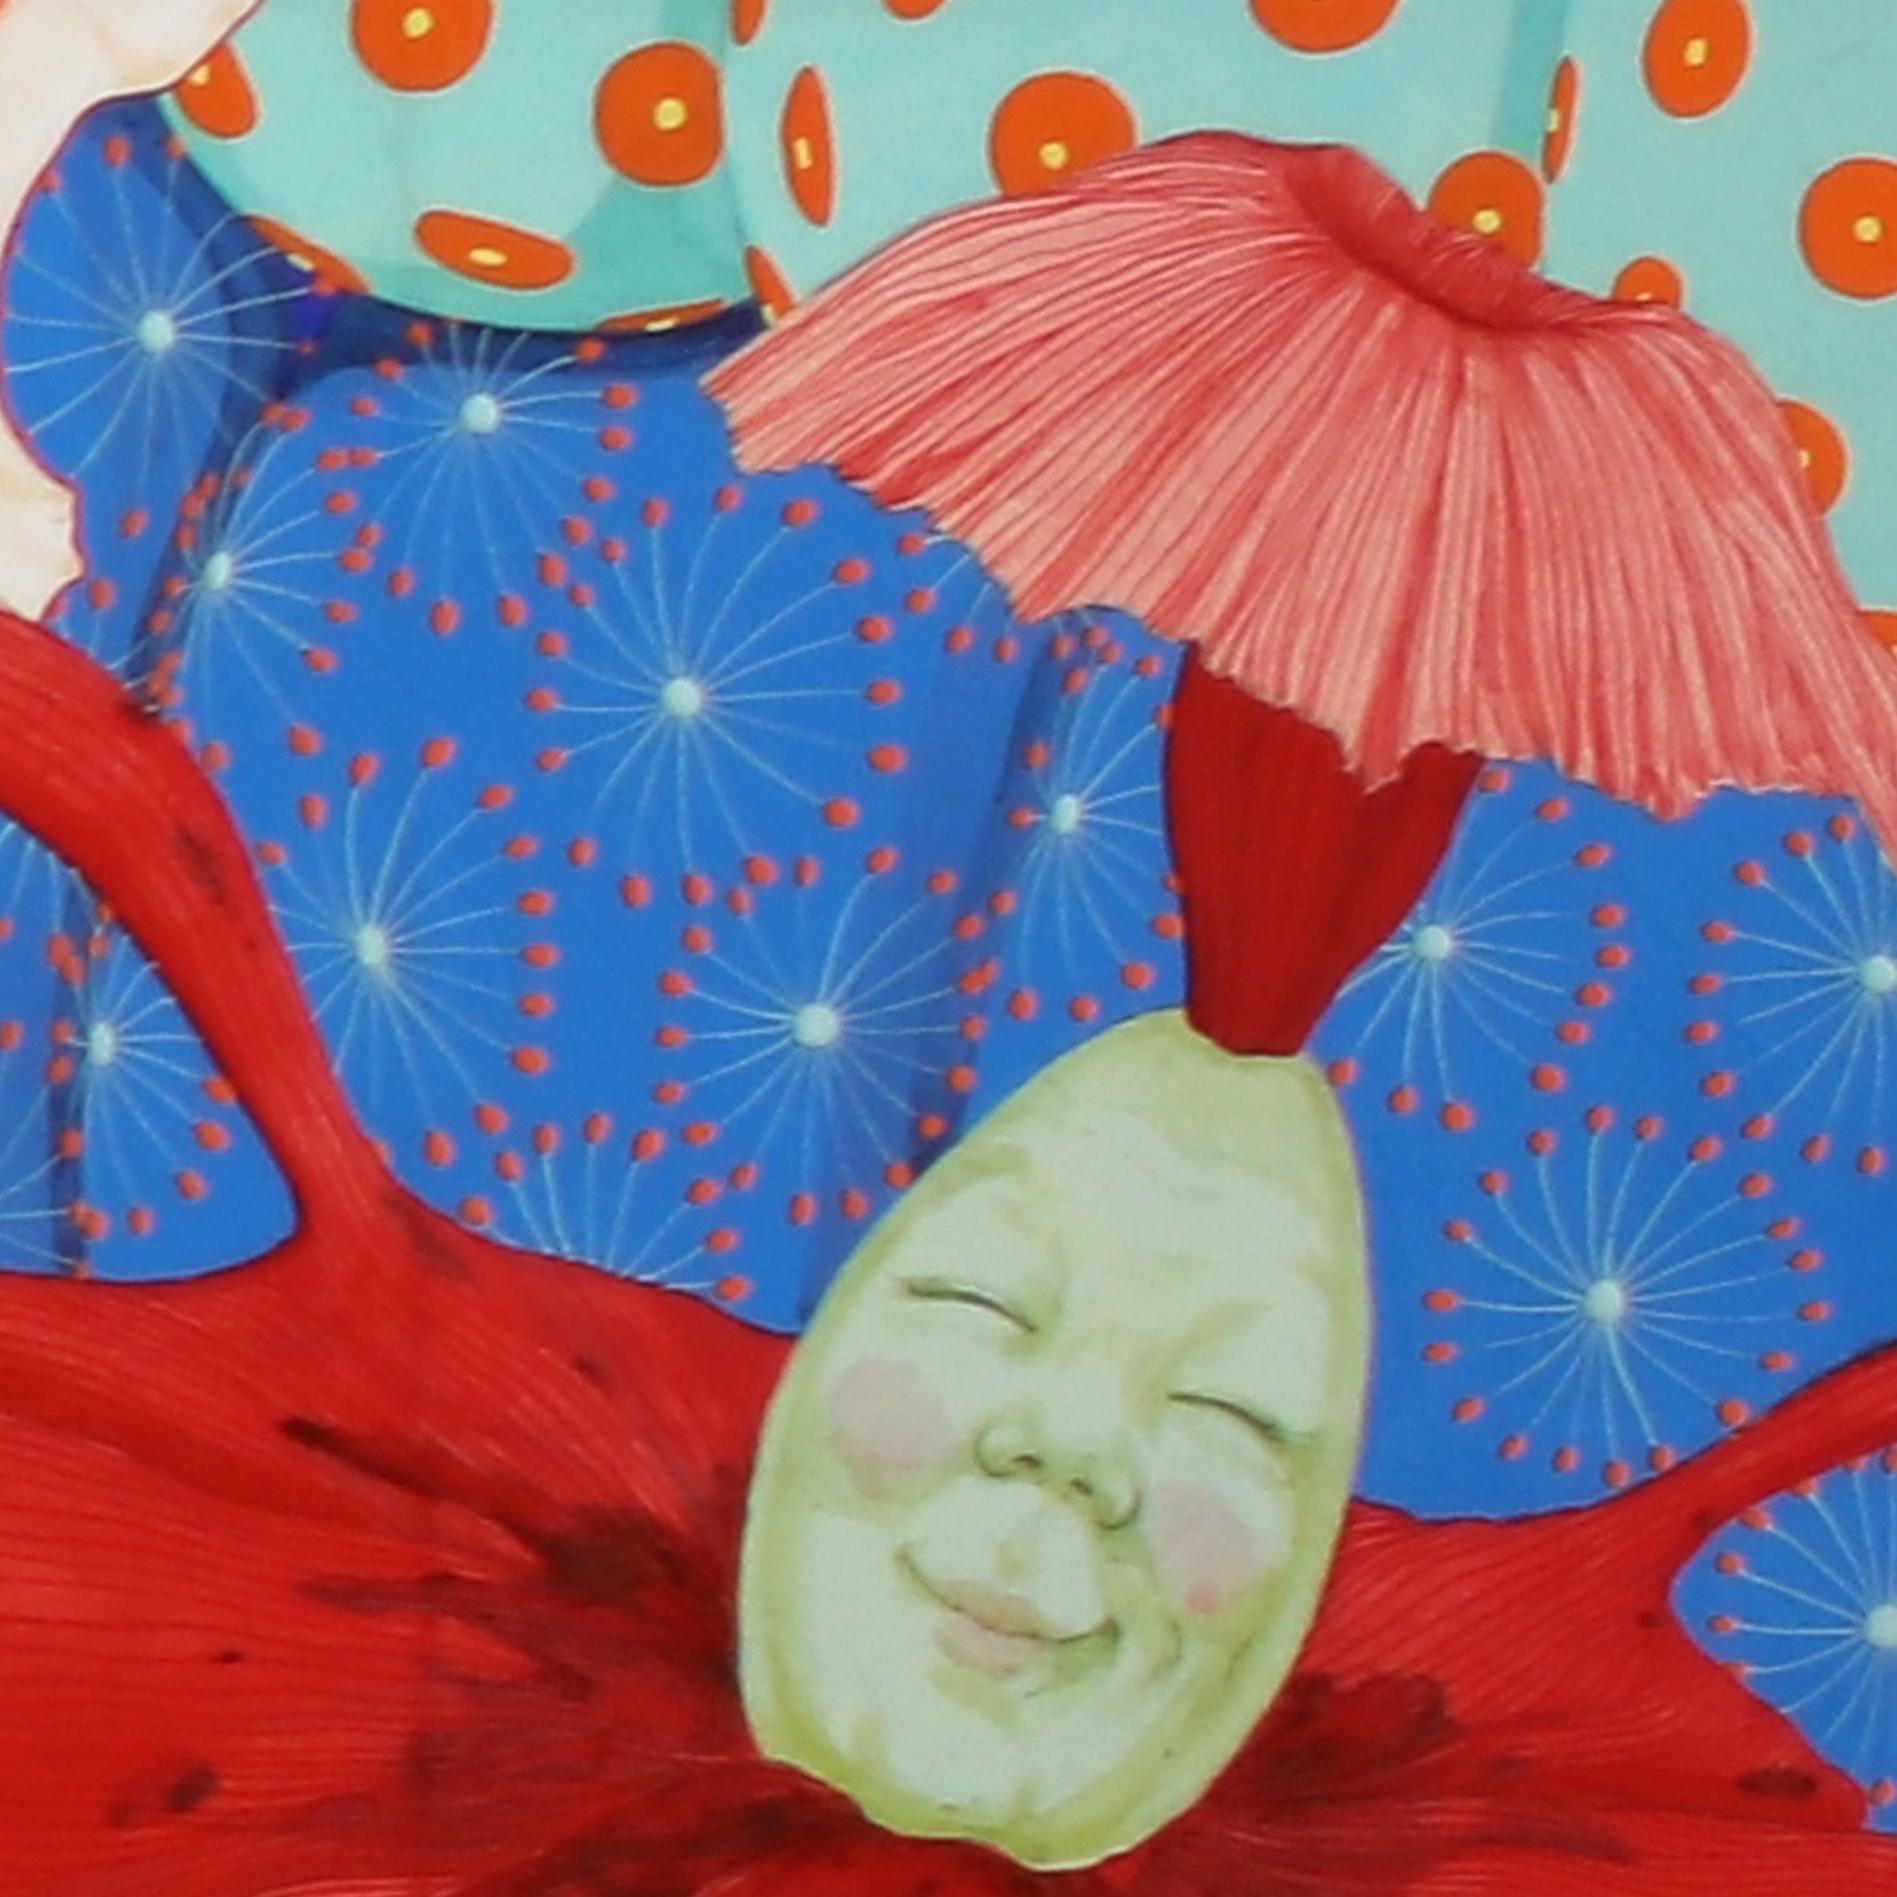 Titre complet : Transformación del Deseo-Alegría II (Diptyque)

Mari Ito est née à Tokyo, au Japon, en 1980. Elle s'est spécialisée dans le Nihonga, la peinture de style japonais réalisée avec des pratiques, des techniques et des matériaux